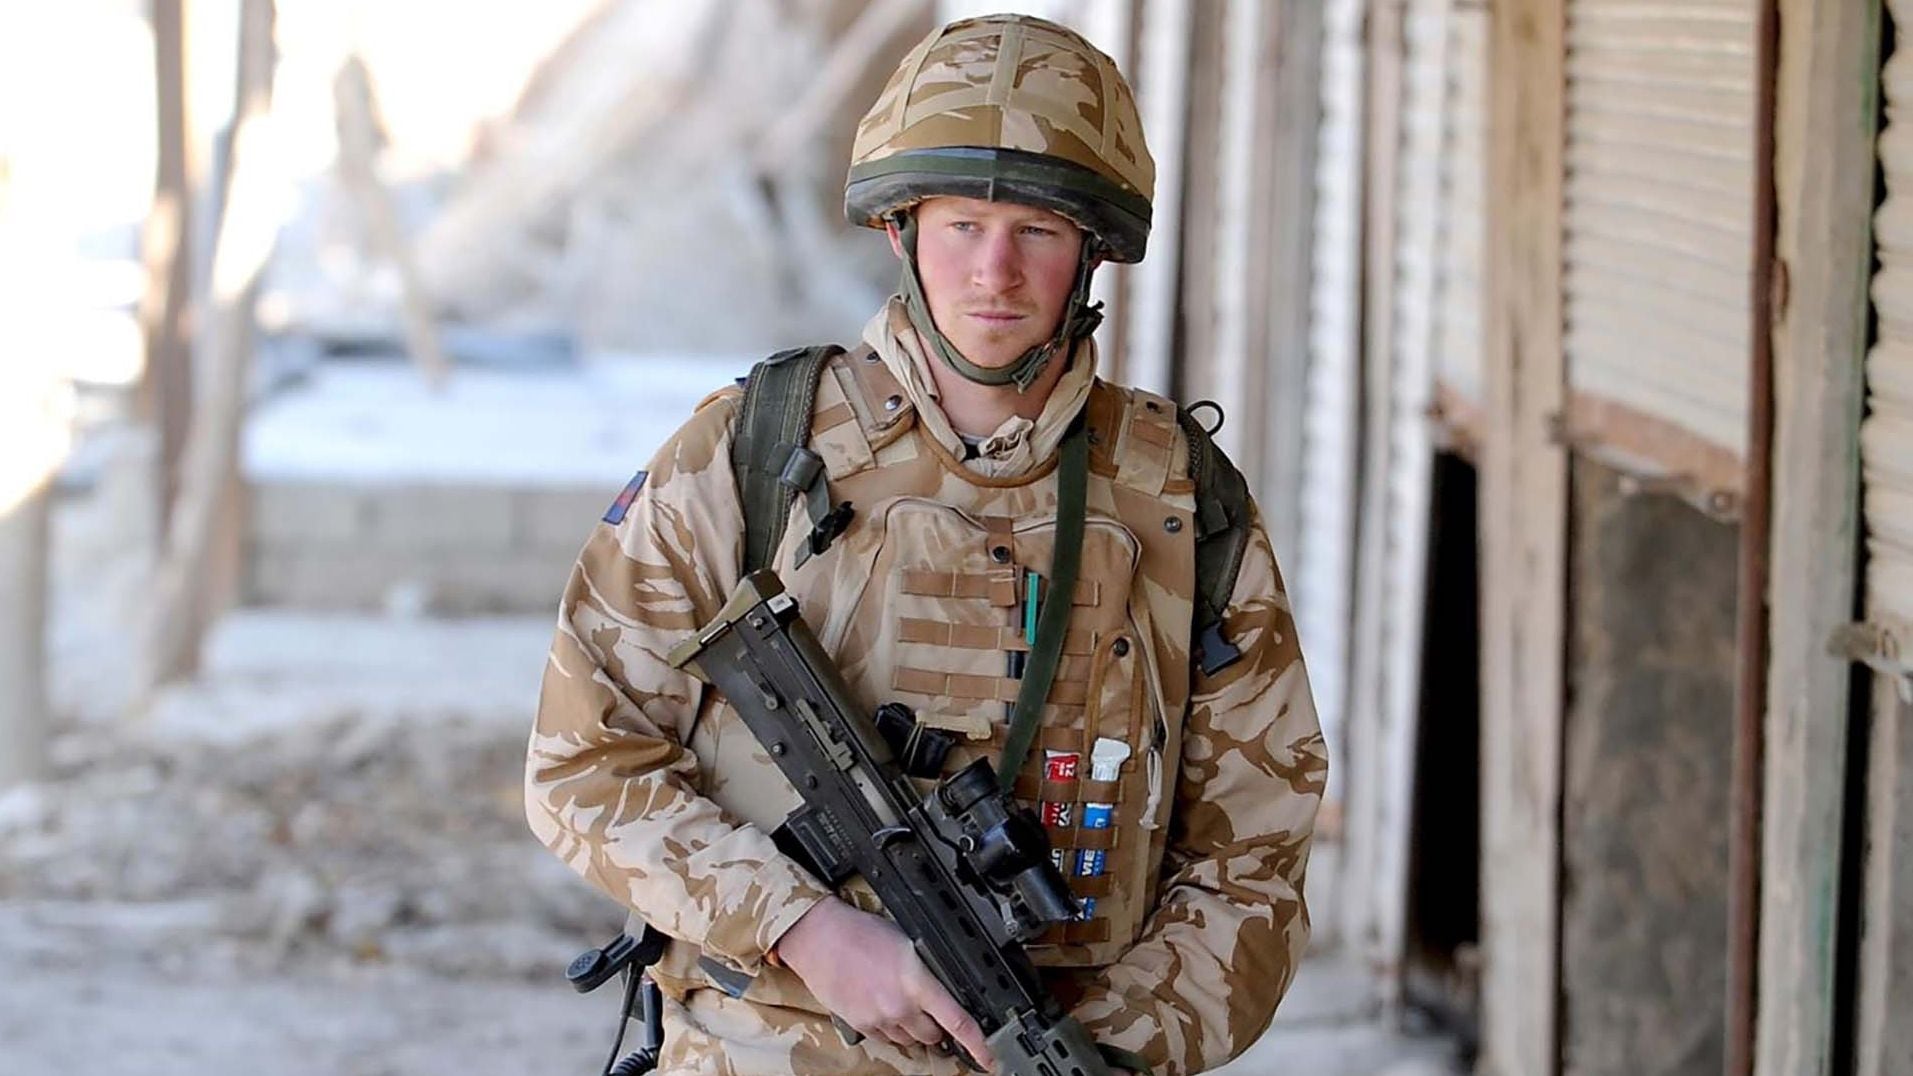 Harry confesó que su único momento de libertad había sido servir al ejercito británico en Afganistán
REX/Shutterstock 